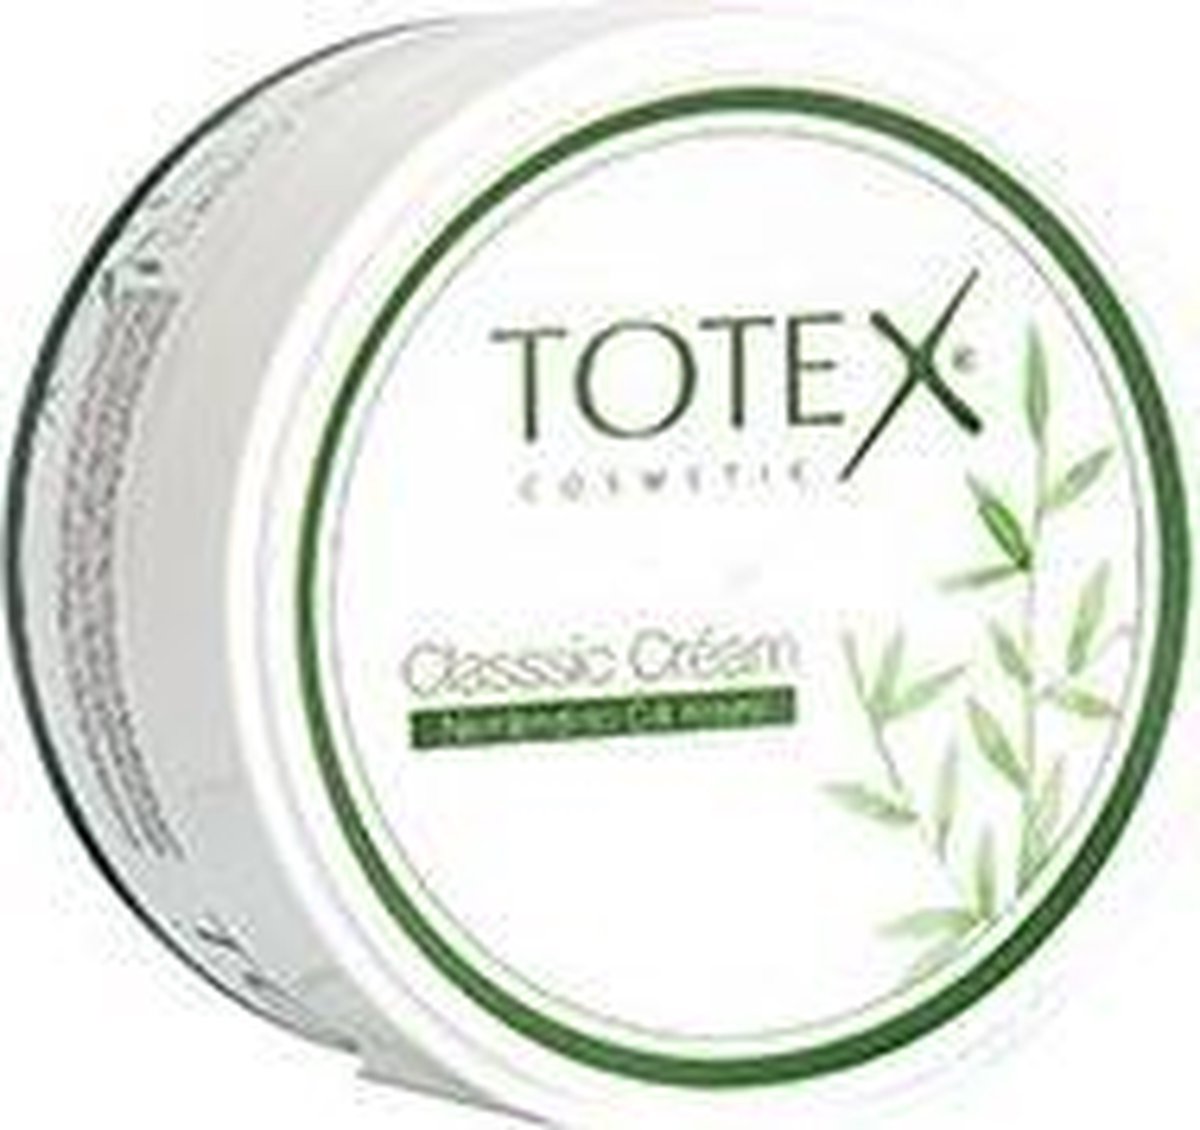 Totex Classic Creám 150 ml